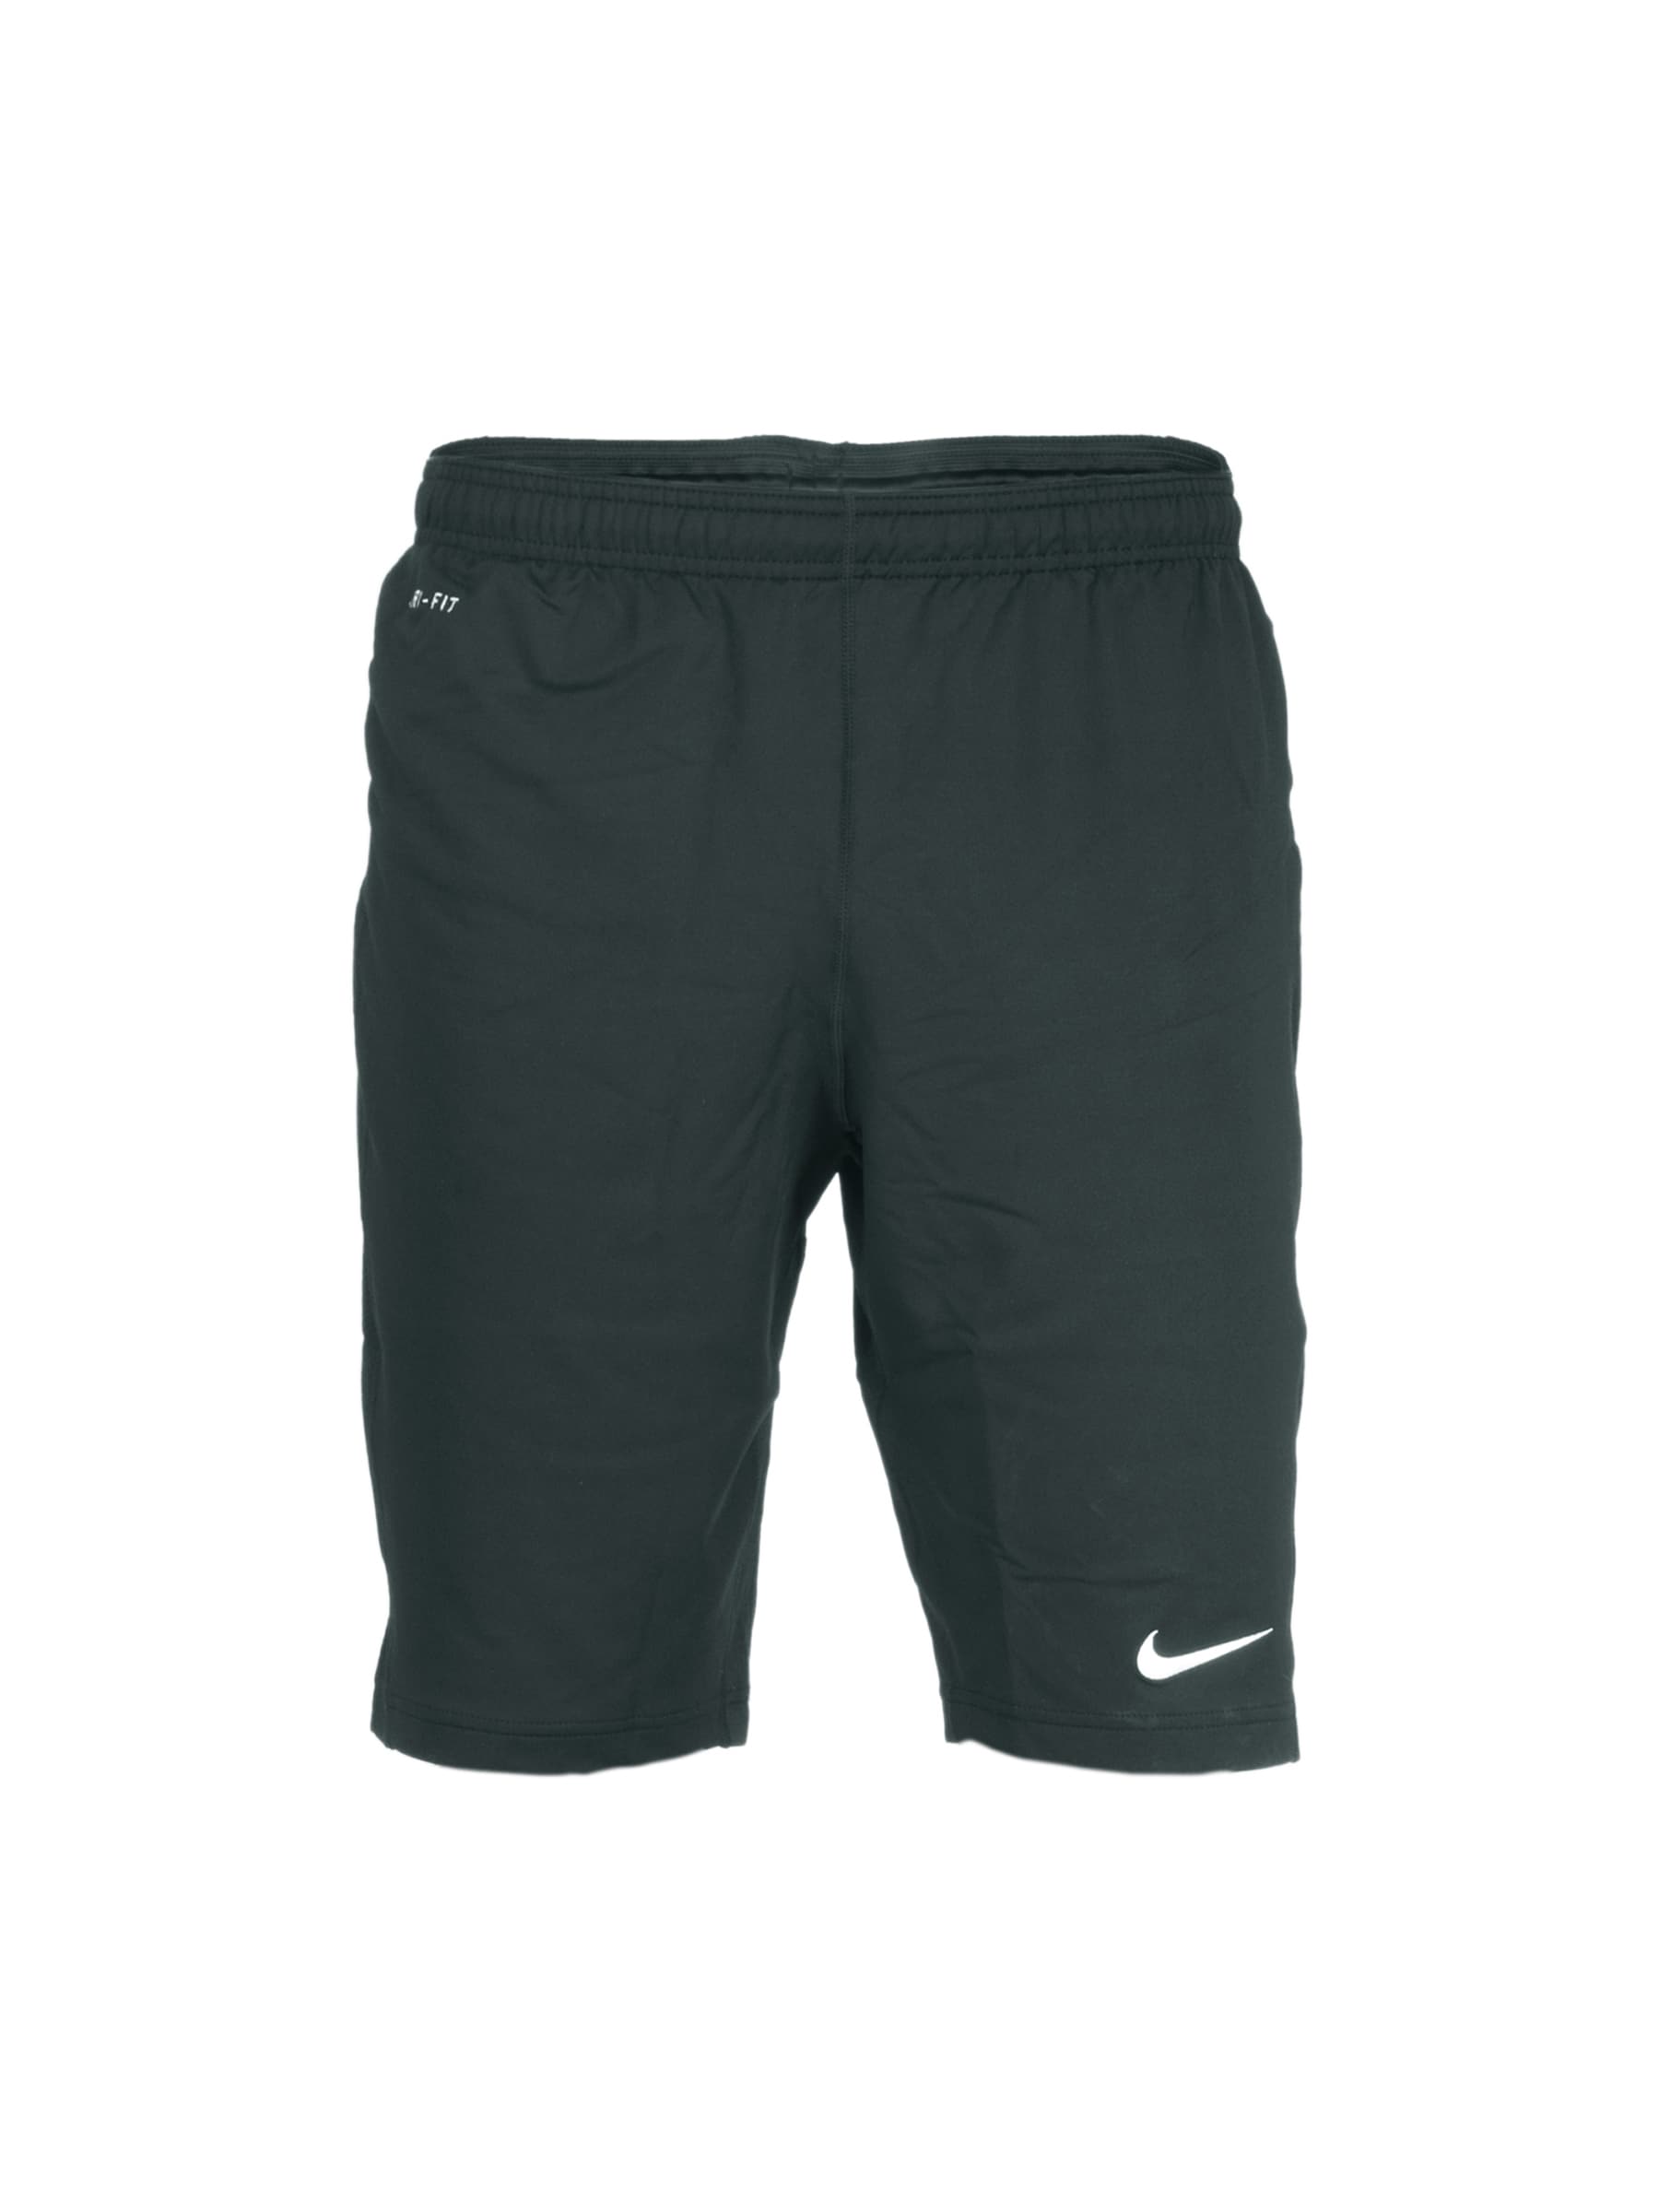 Nike Men Longer Knit Black Shorts